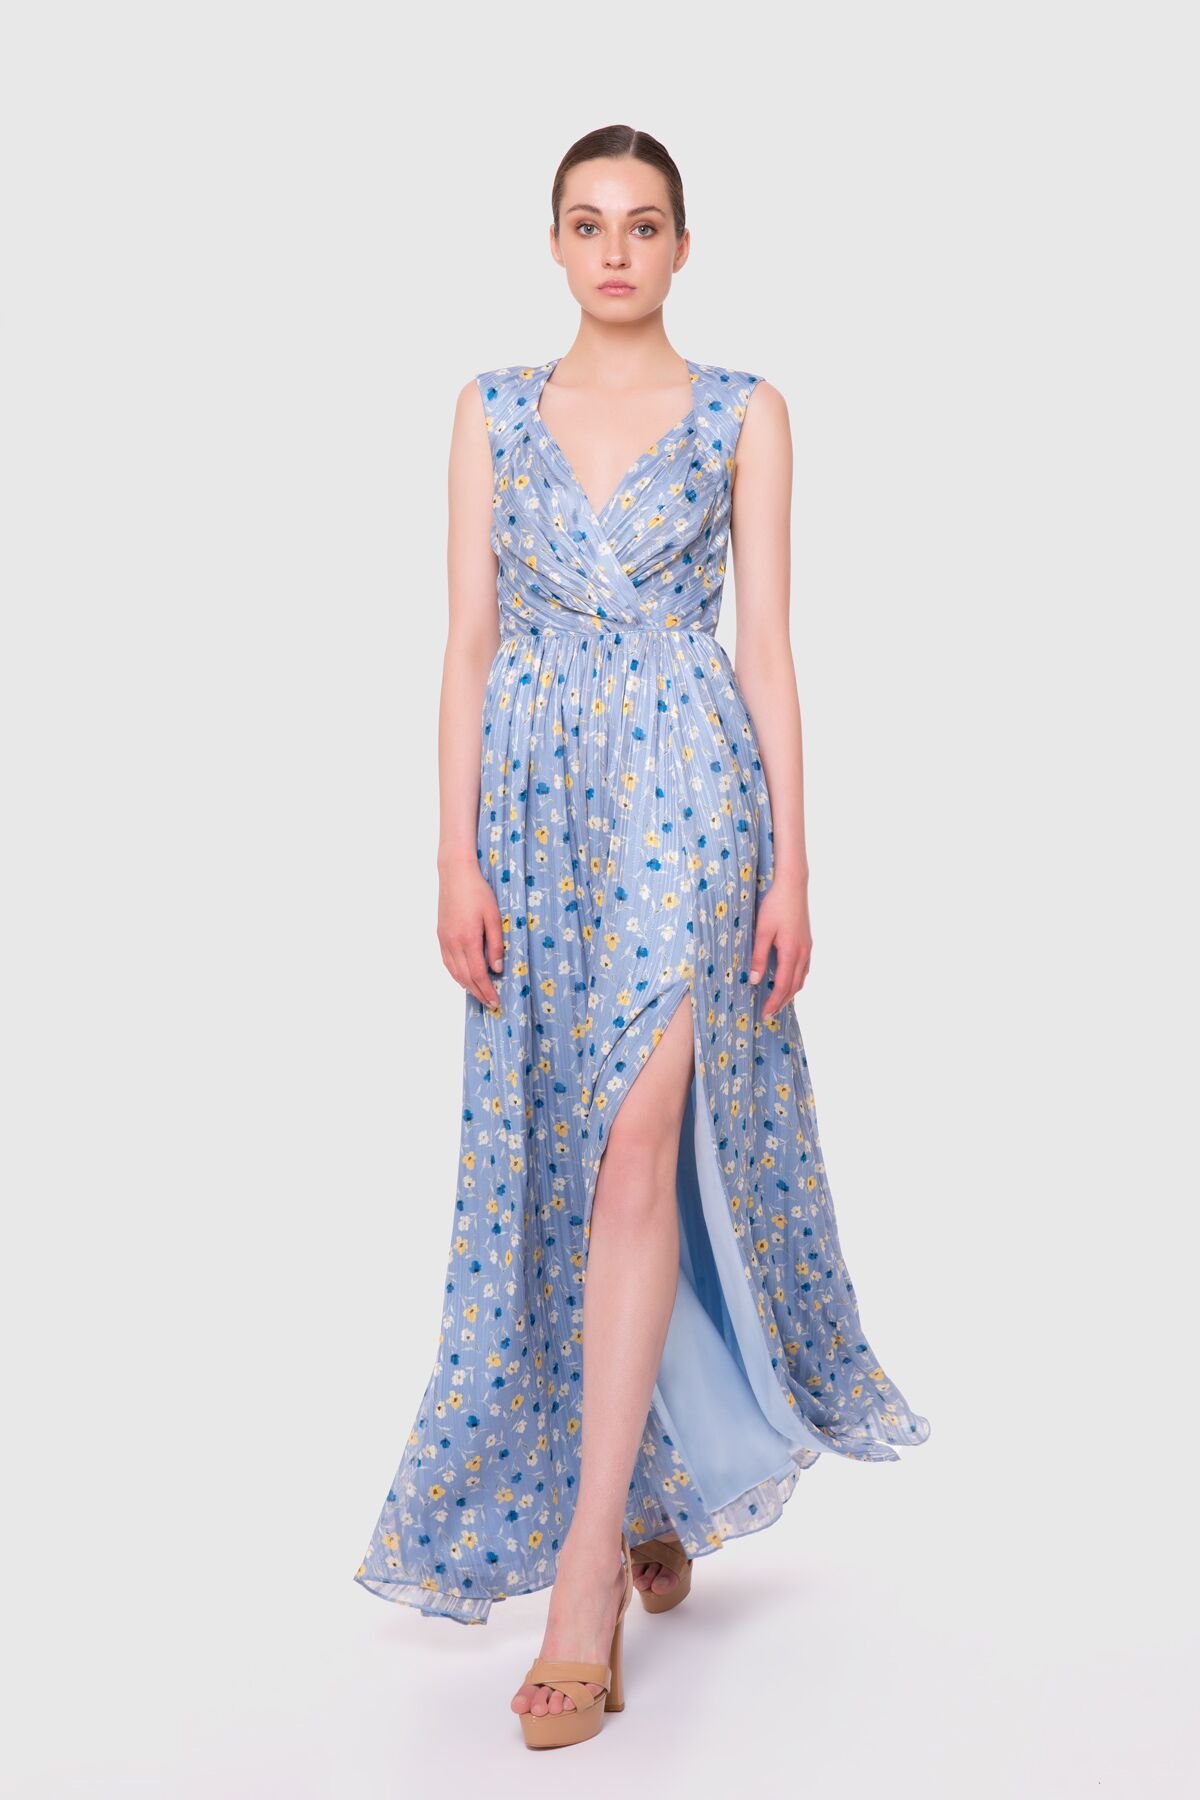 Backless Long Blue Chiffon Dress